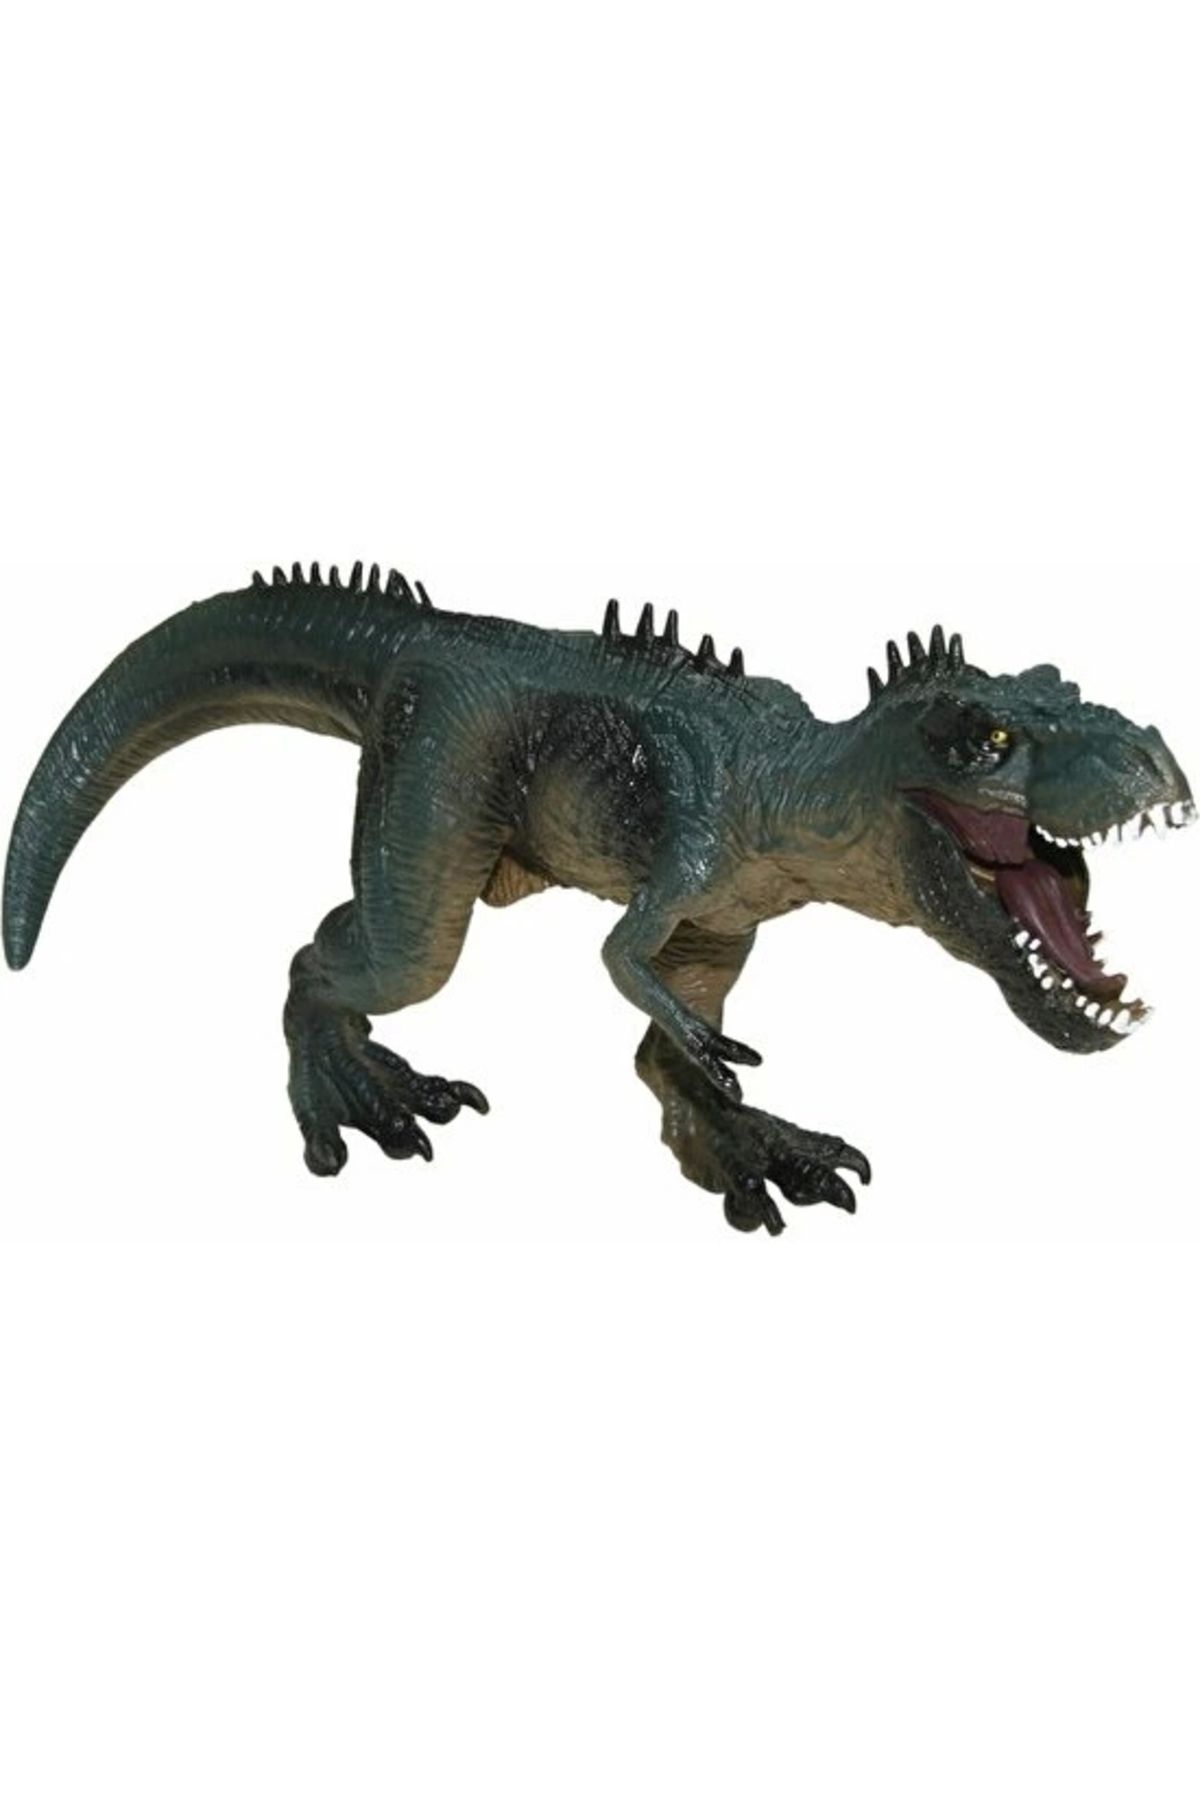 Vardem 32 Cm Ağzı Oynayan Dinozor